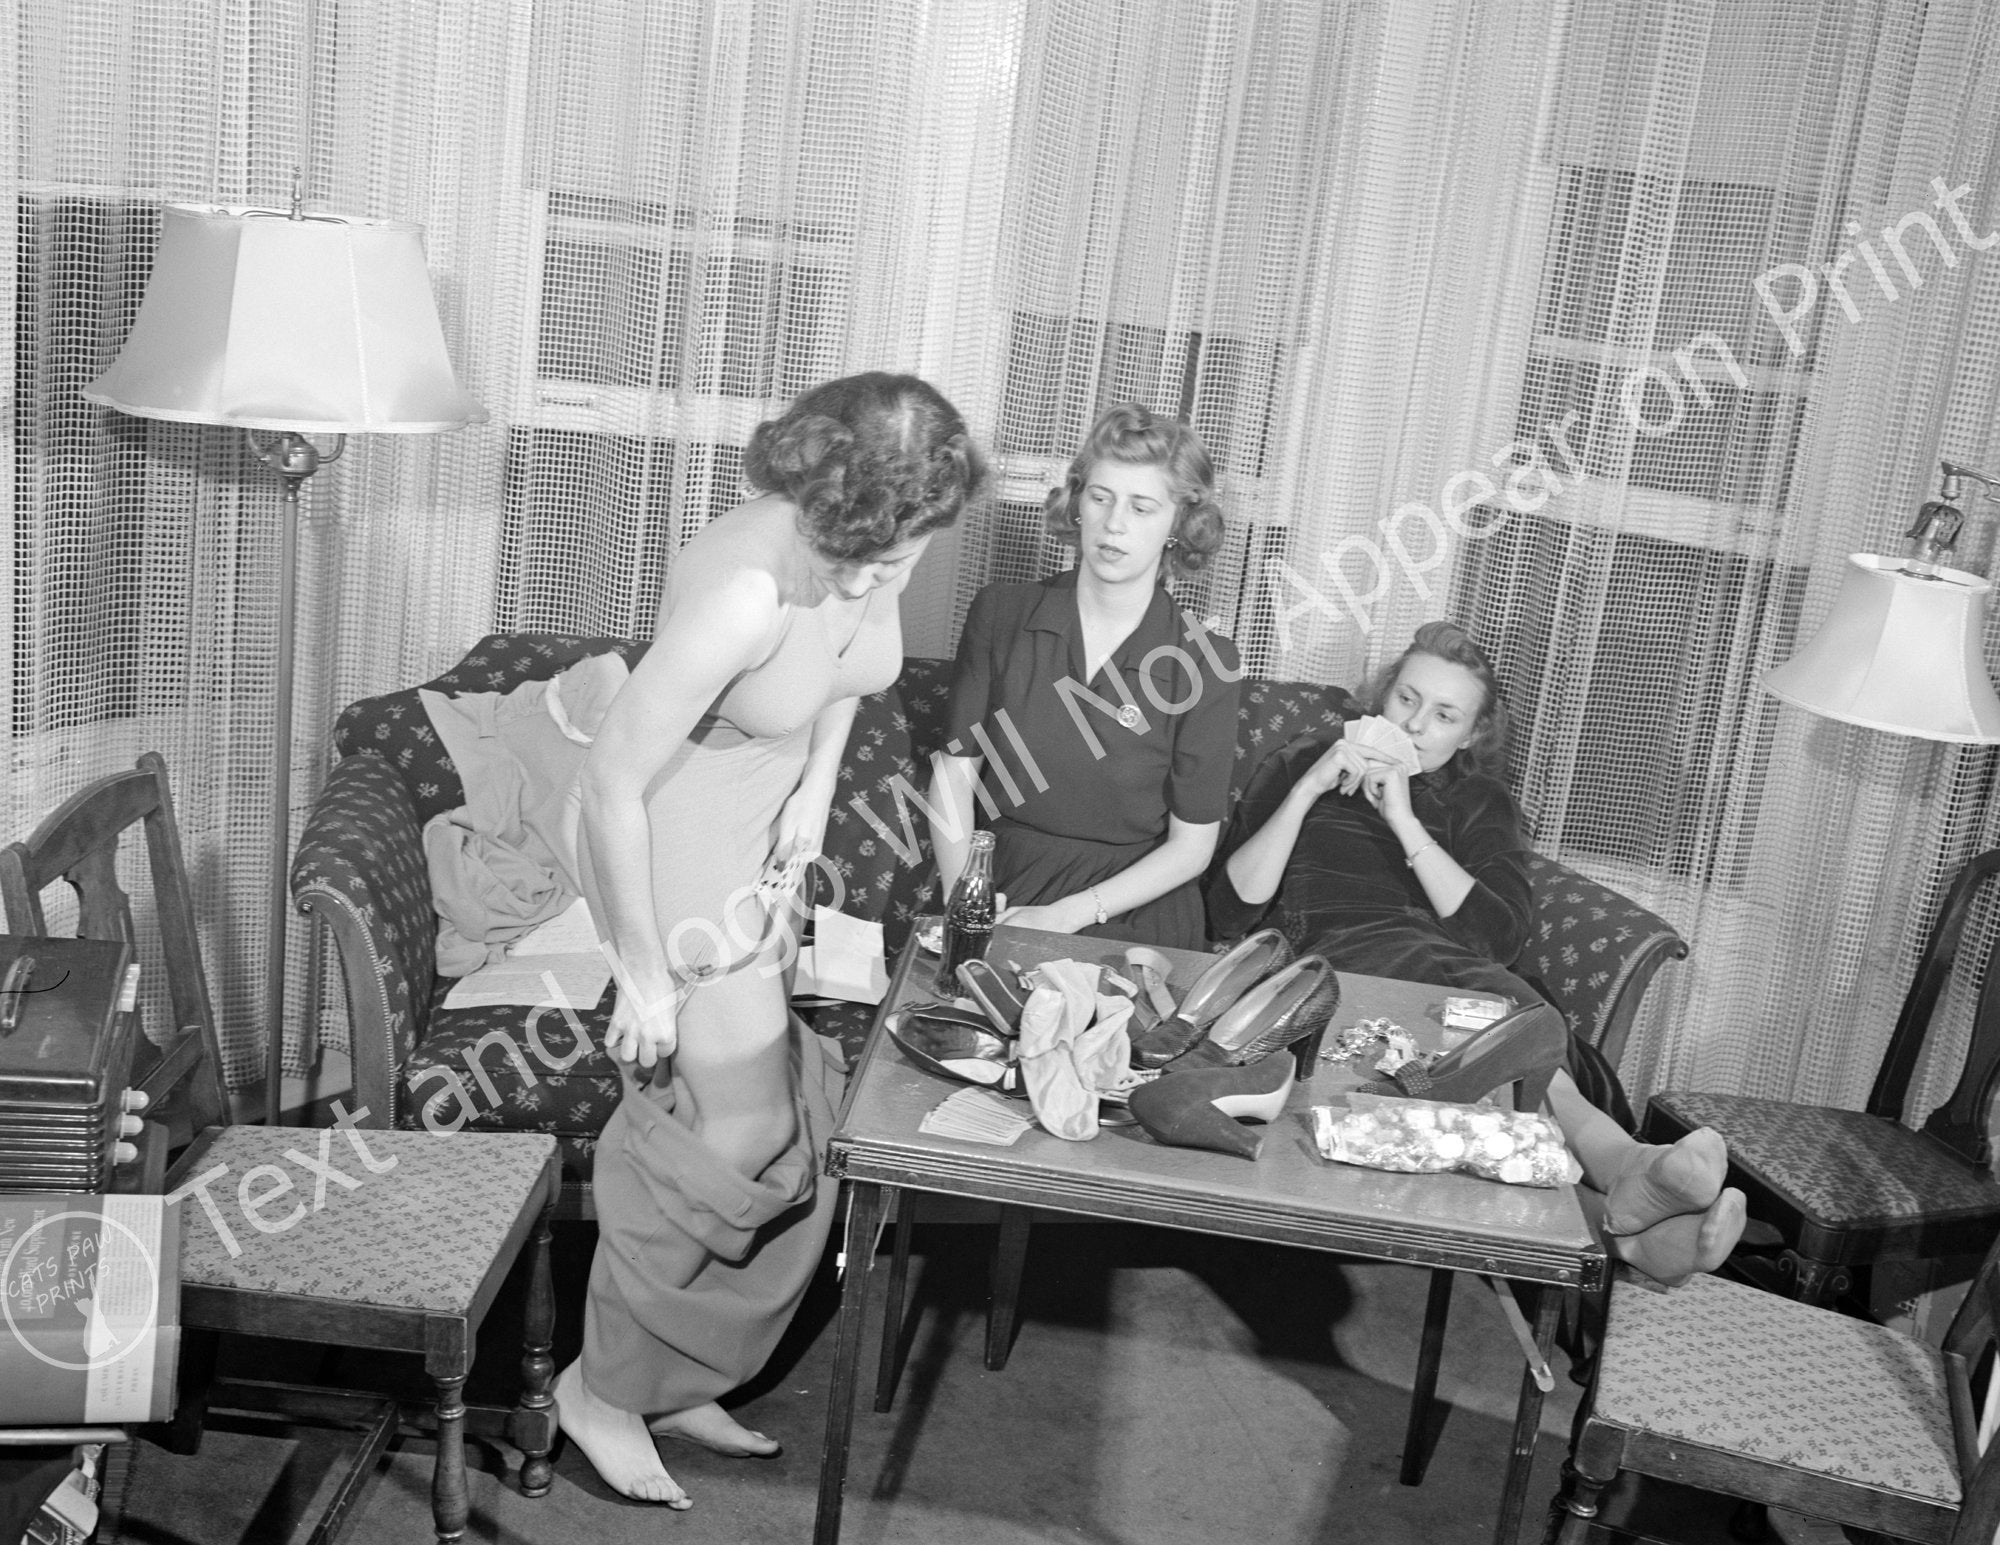 1941 Girls Playing Strip Poker Detroit Michigan Vintage image pic